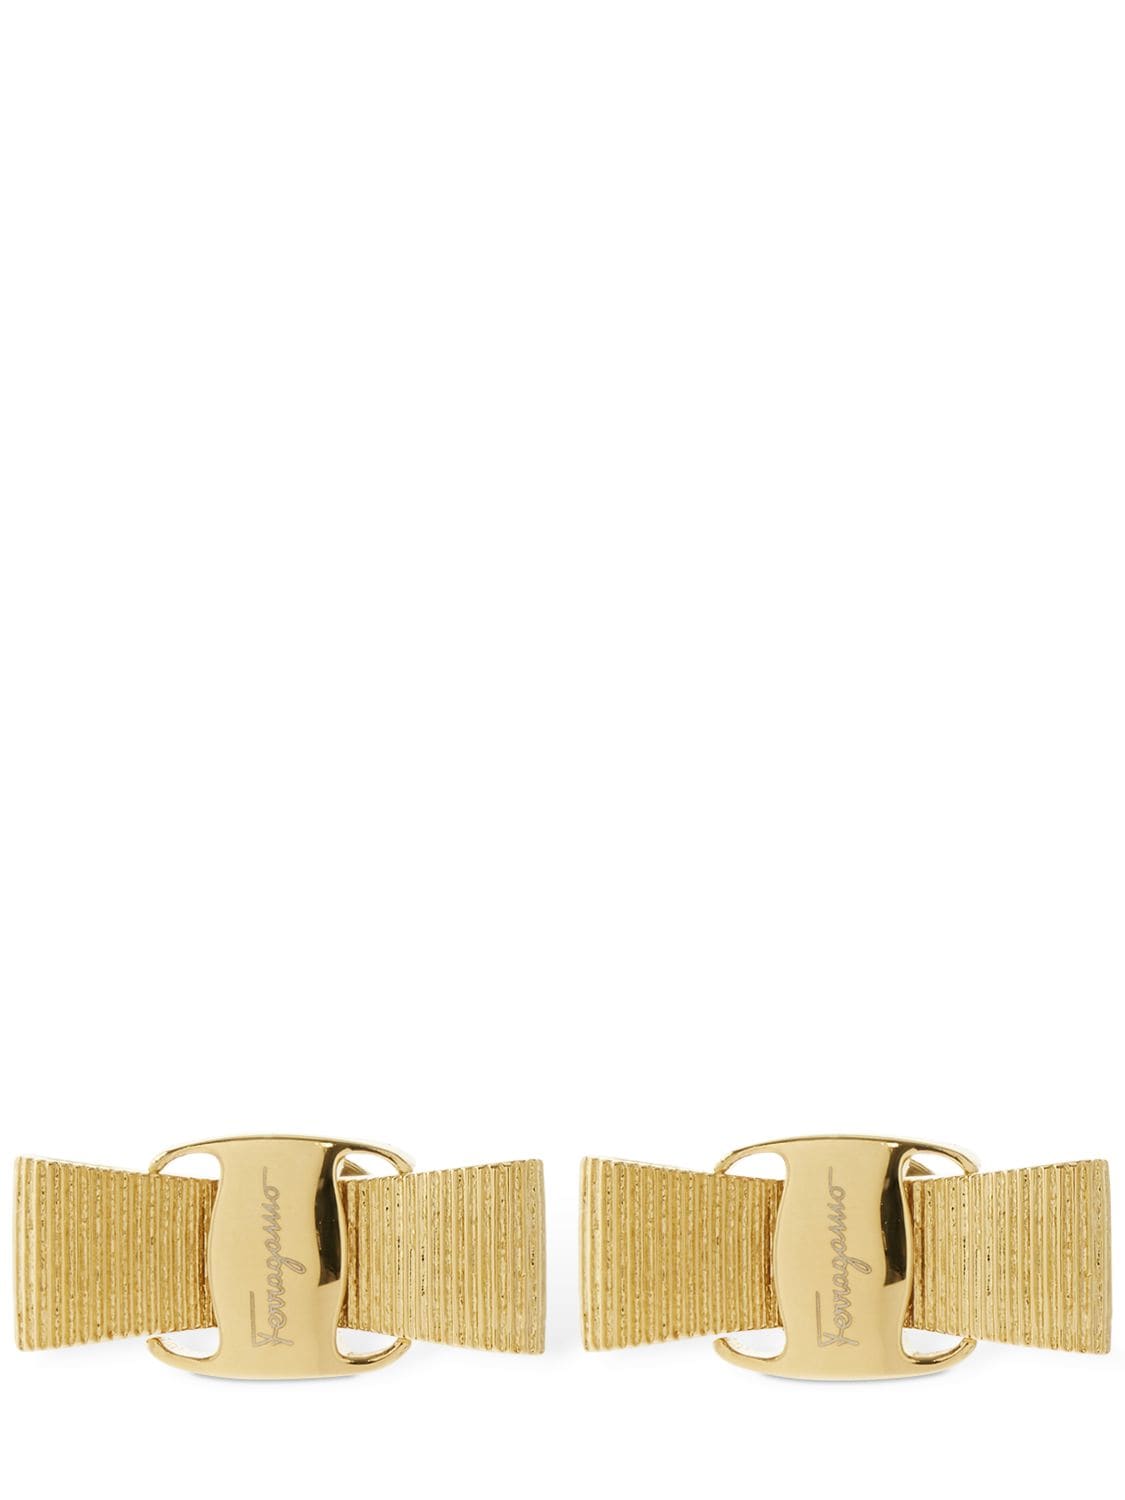 Shop Ferragamo Vara Bow Stud Earrings In Gold